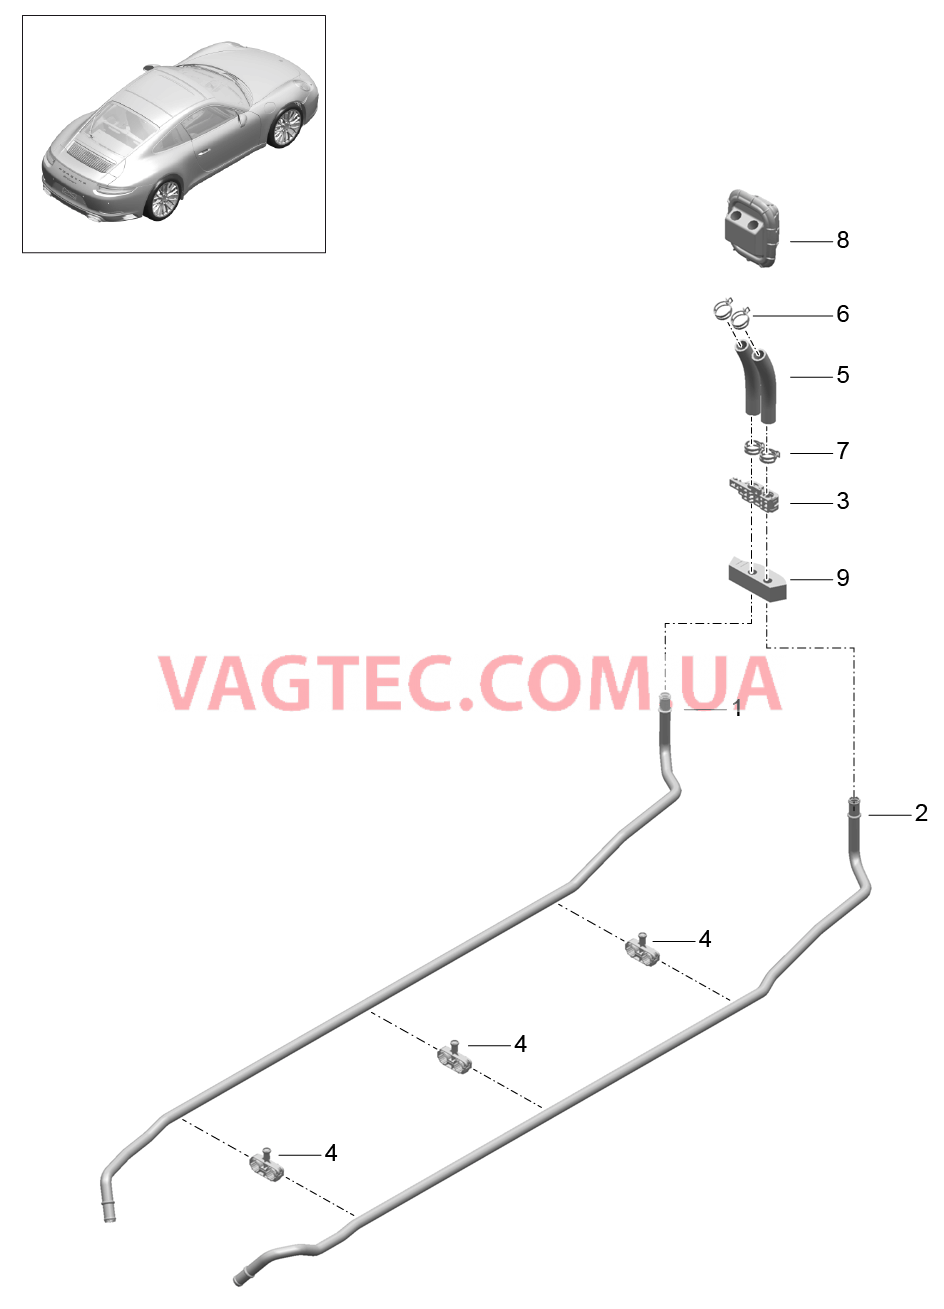 813-050 Обогрев, Подводящий трубопровод, Обратная магистраль для PORSCHE 911.Carrera 2017-2018USA